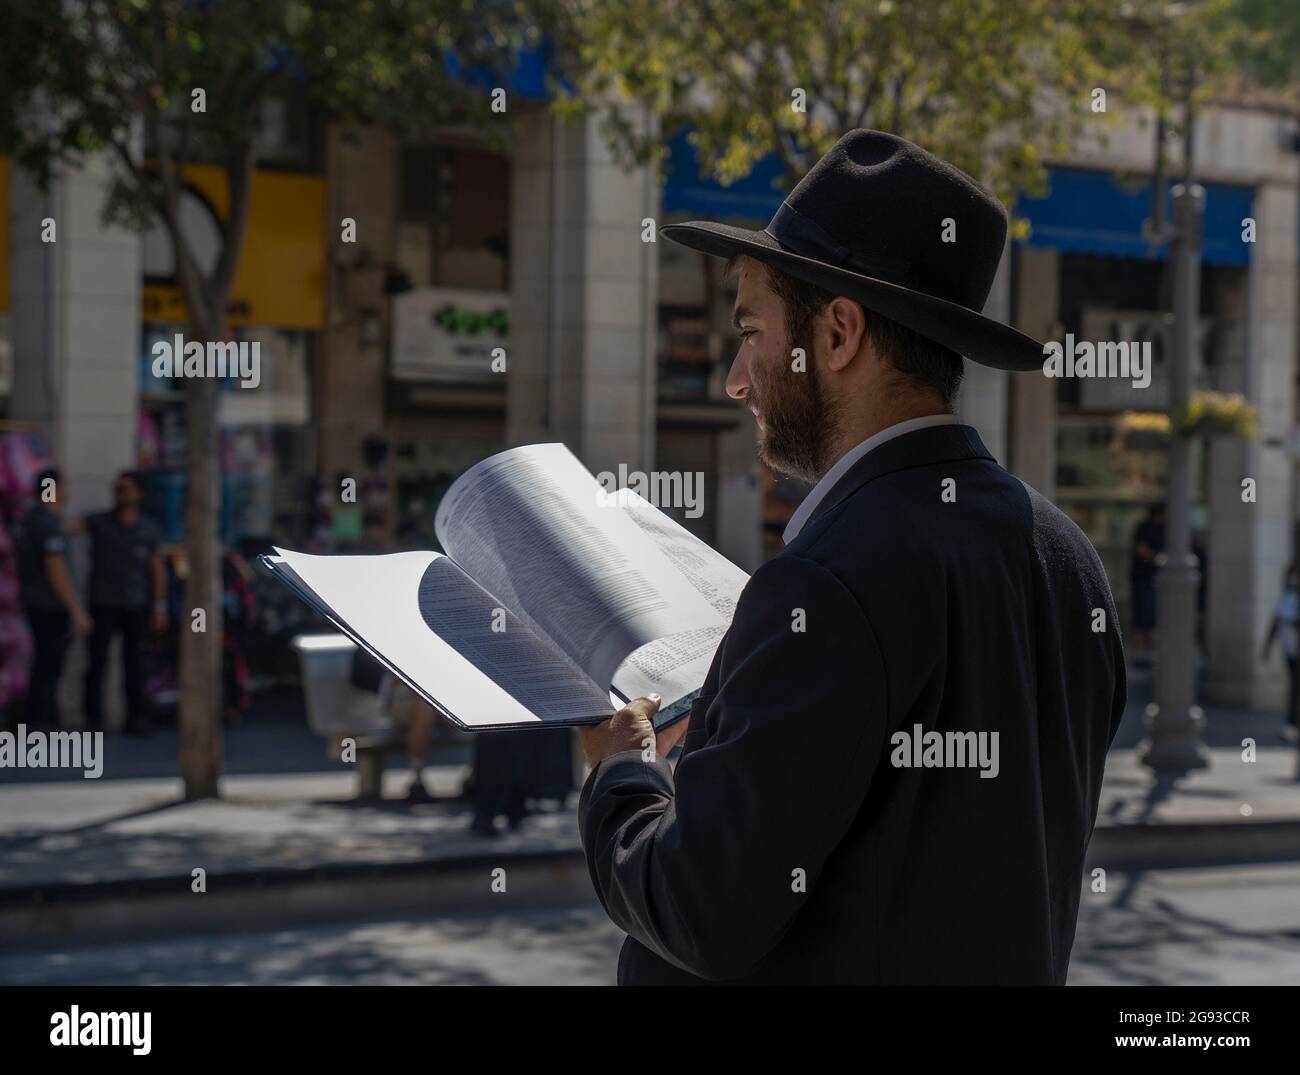 Jérusalem, Israël - 21 juillet 2021 : un juif orthodoxe lisant un livre de Mishna sur une rue de Jérusalem, Israël, un jour ensoleillé. Banque D'Images